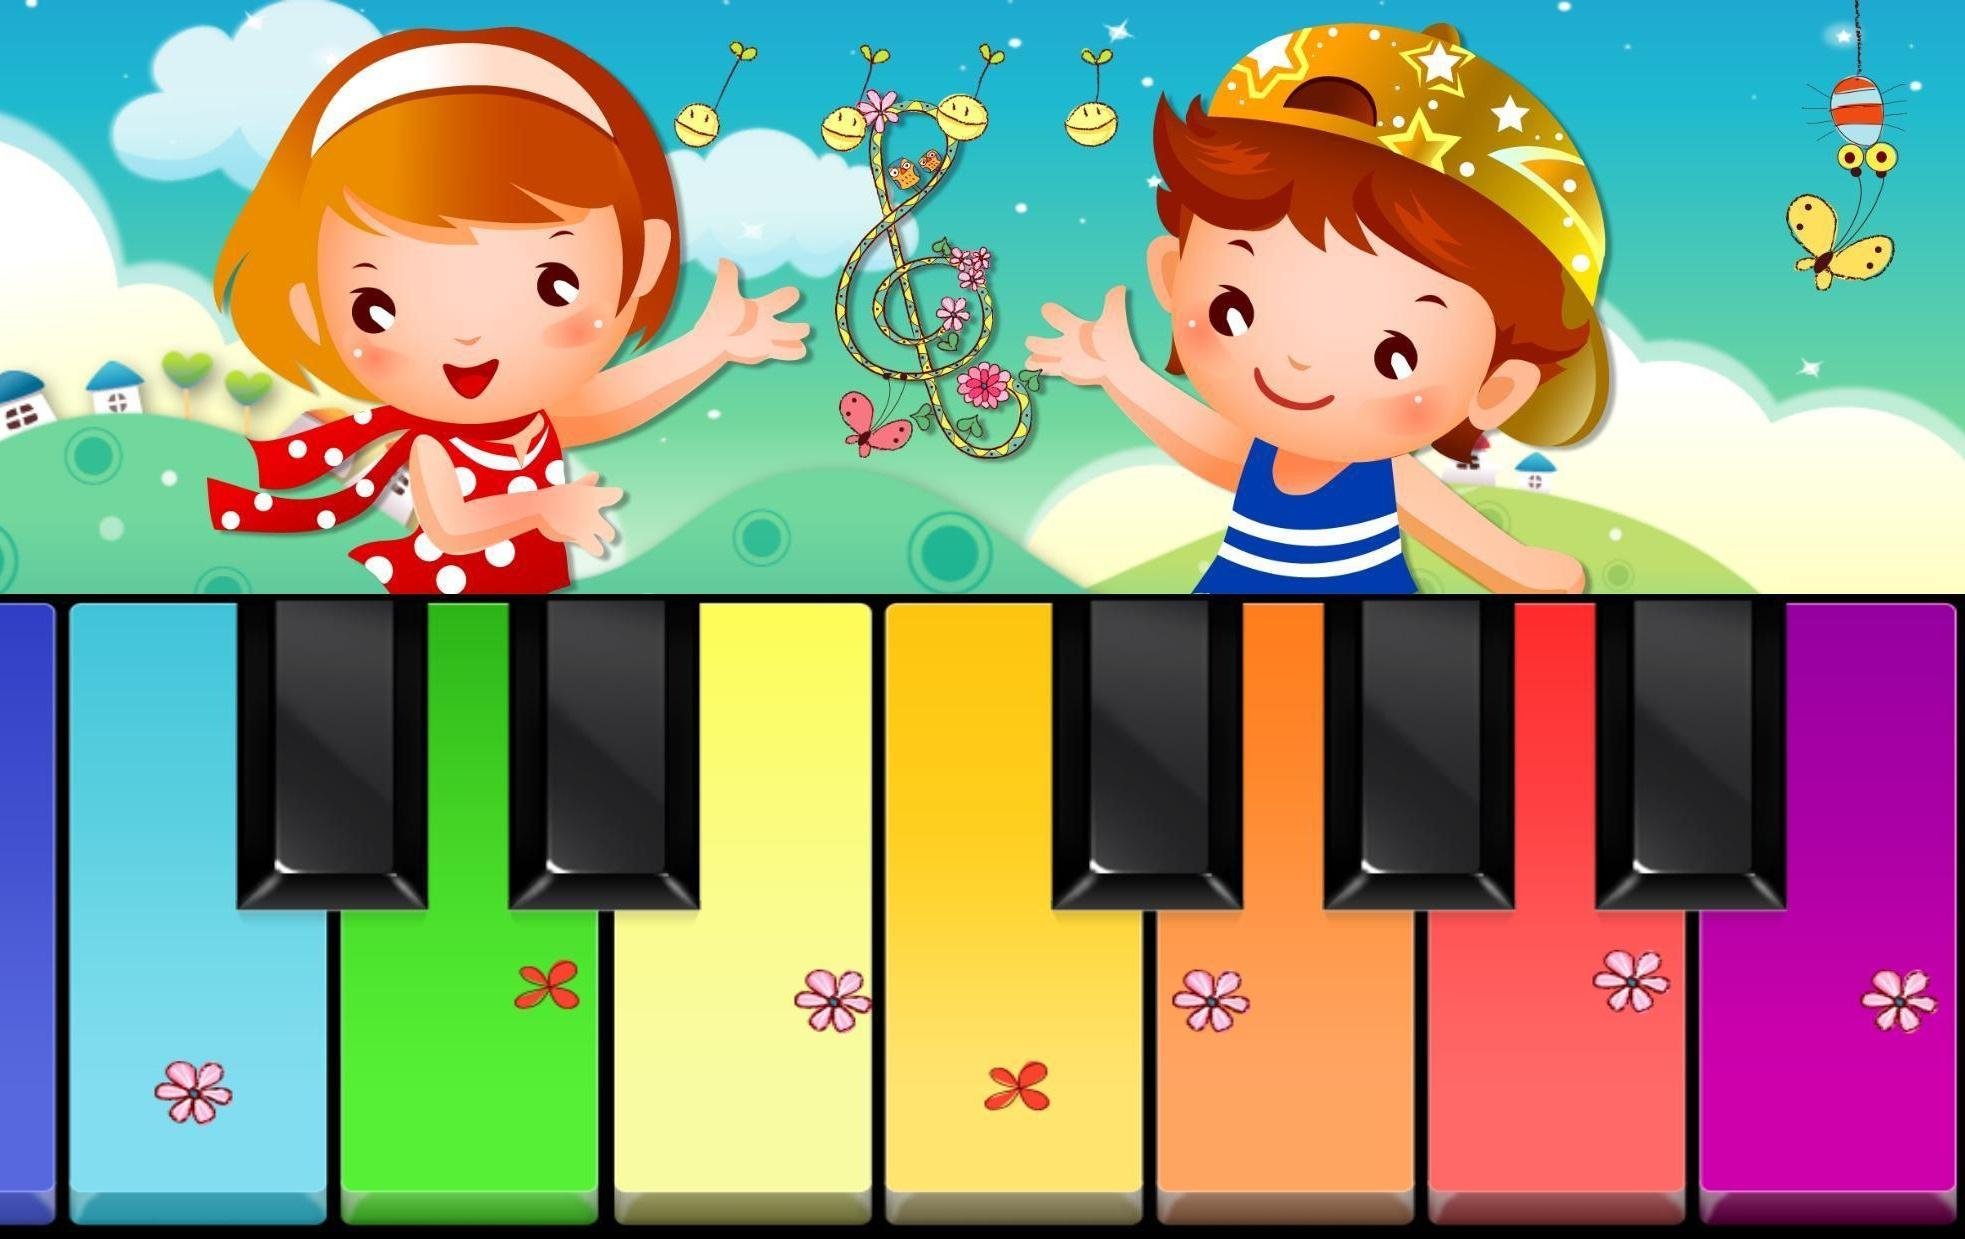 Музыкальная игра 1 2 3 4. Музыкальное занятие в детском саду. Музыкальное занятие в ДОУ. Музыкальные игры. Дети на музыкальном занятии в детском саду.